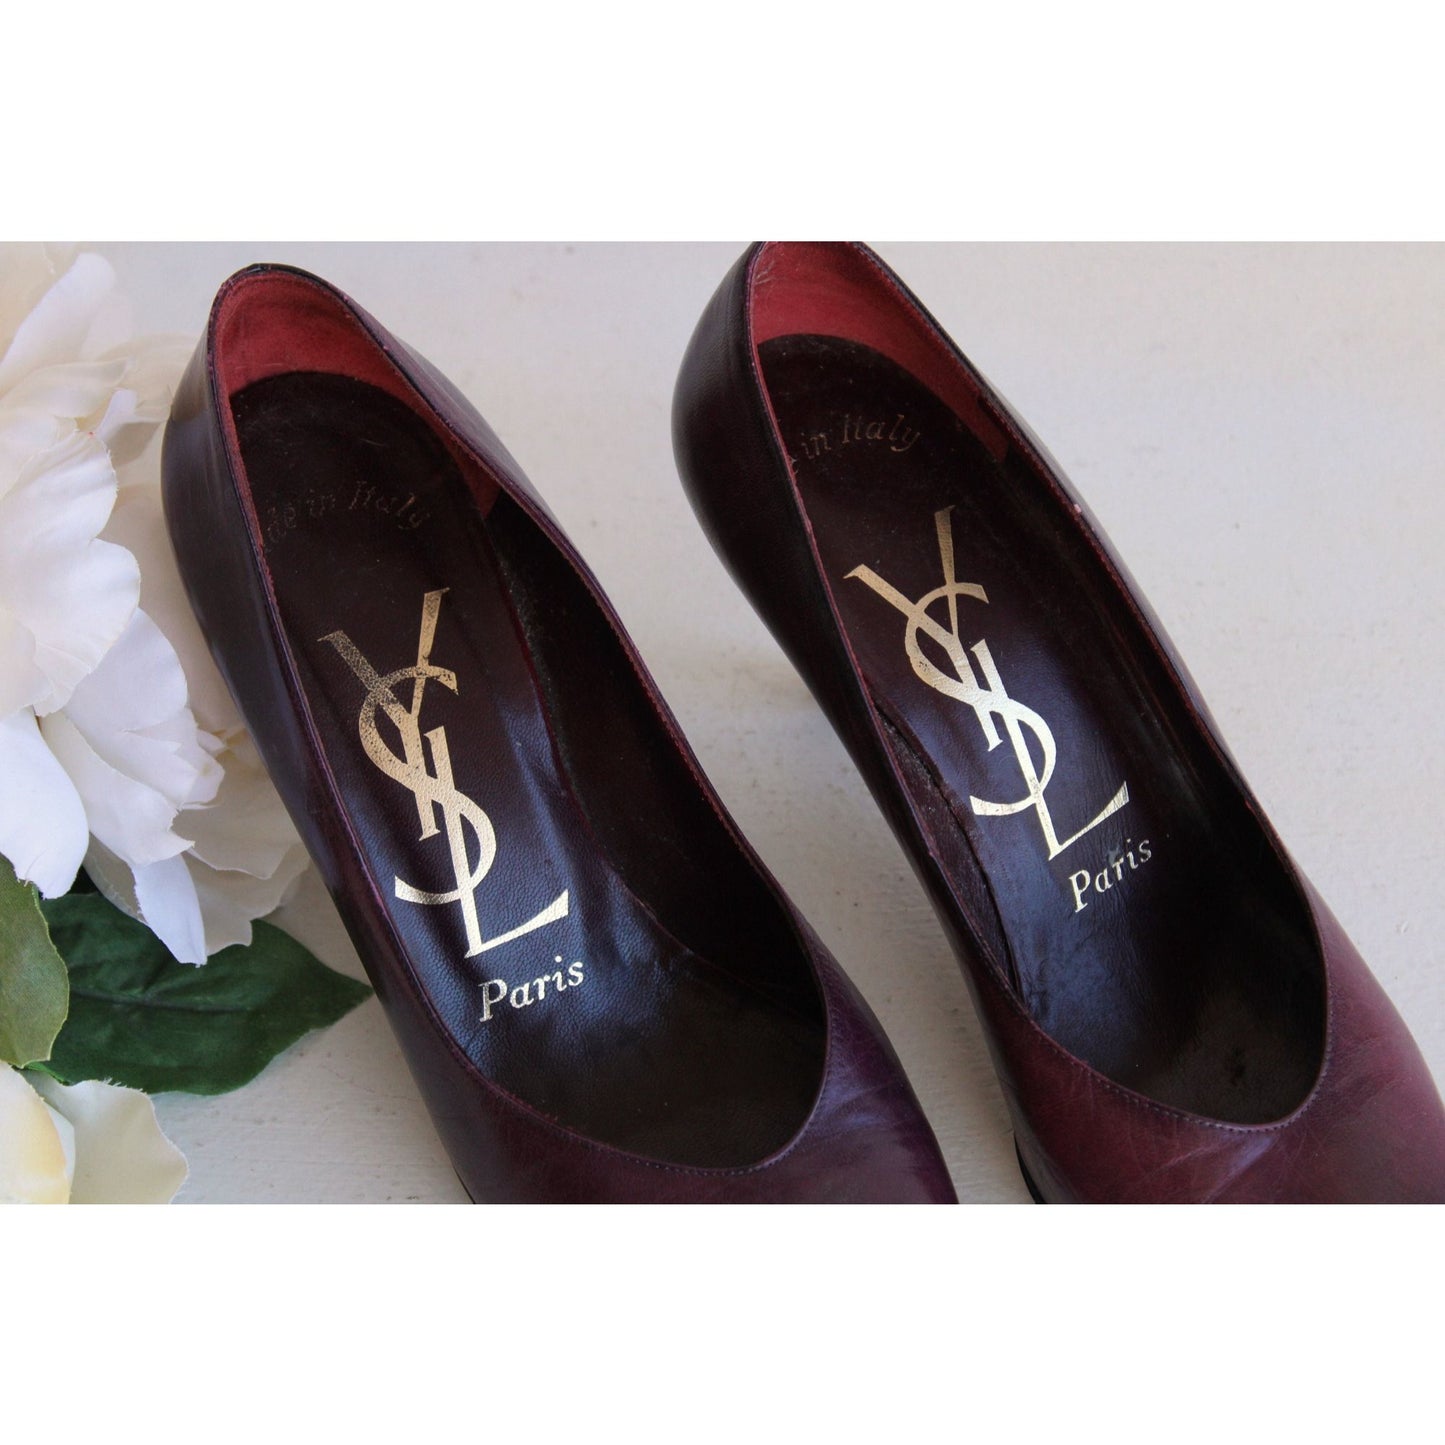 Vintage Yves Saint Laurent Shoes Size 7